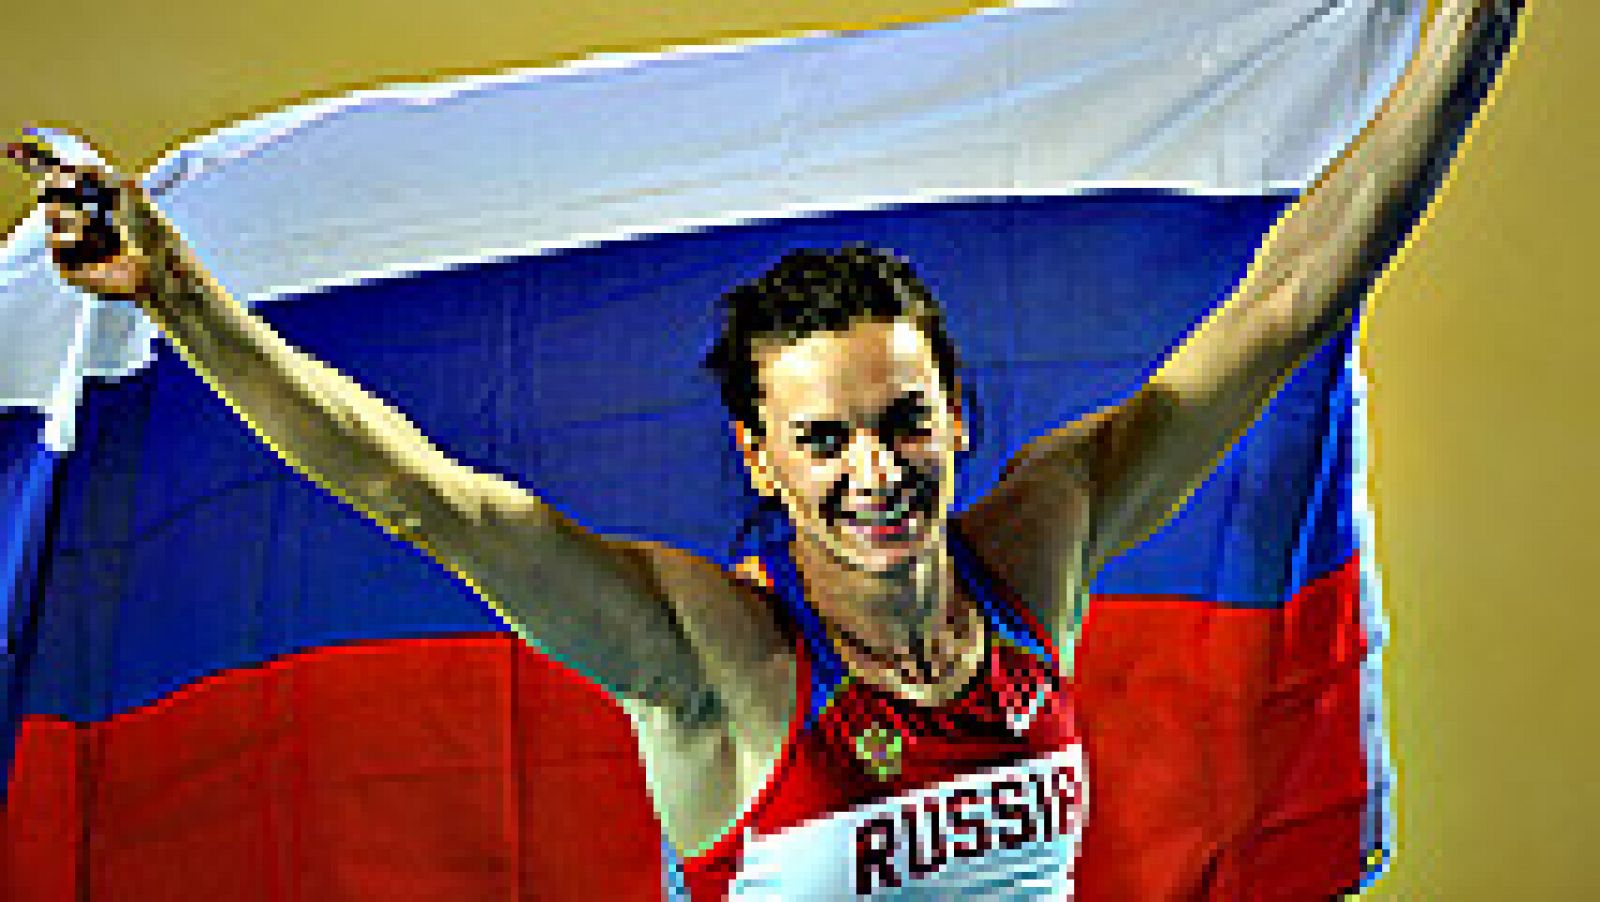 La atleta rusa Elena Isibayeva, que estaba entre los 68 atletas que apelaron la decisión de la IAAF al Tribual de Arbitraje Deportivo (TAS), ha sido de las primeras en reaccionar a la ratificación por parte del TAS de la exclusión de los atletas de s